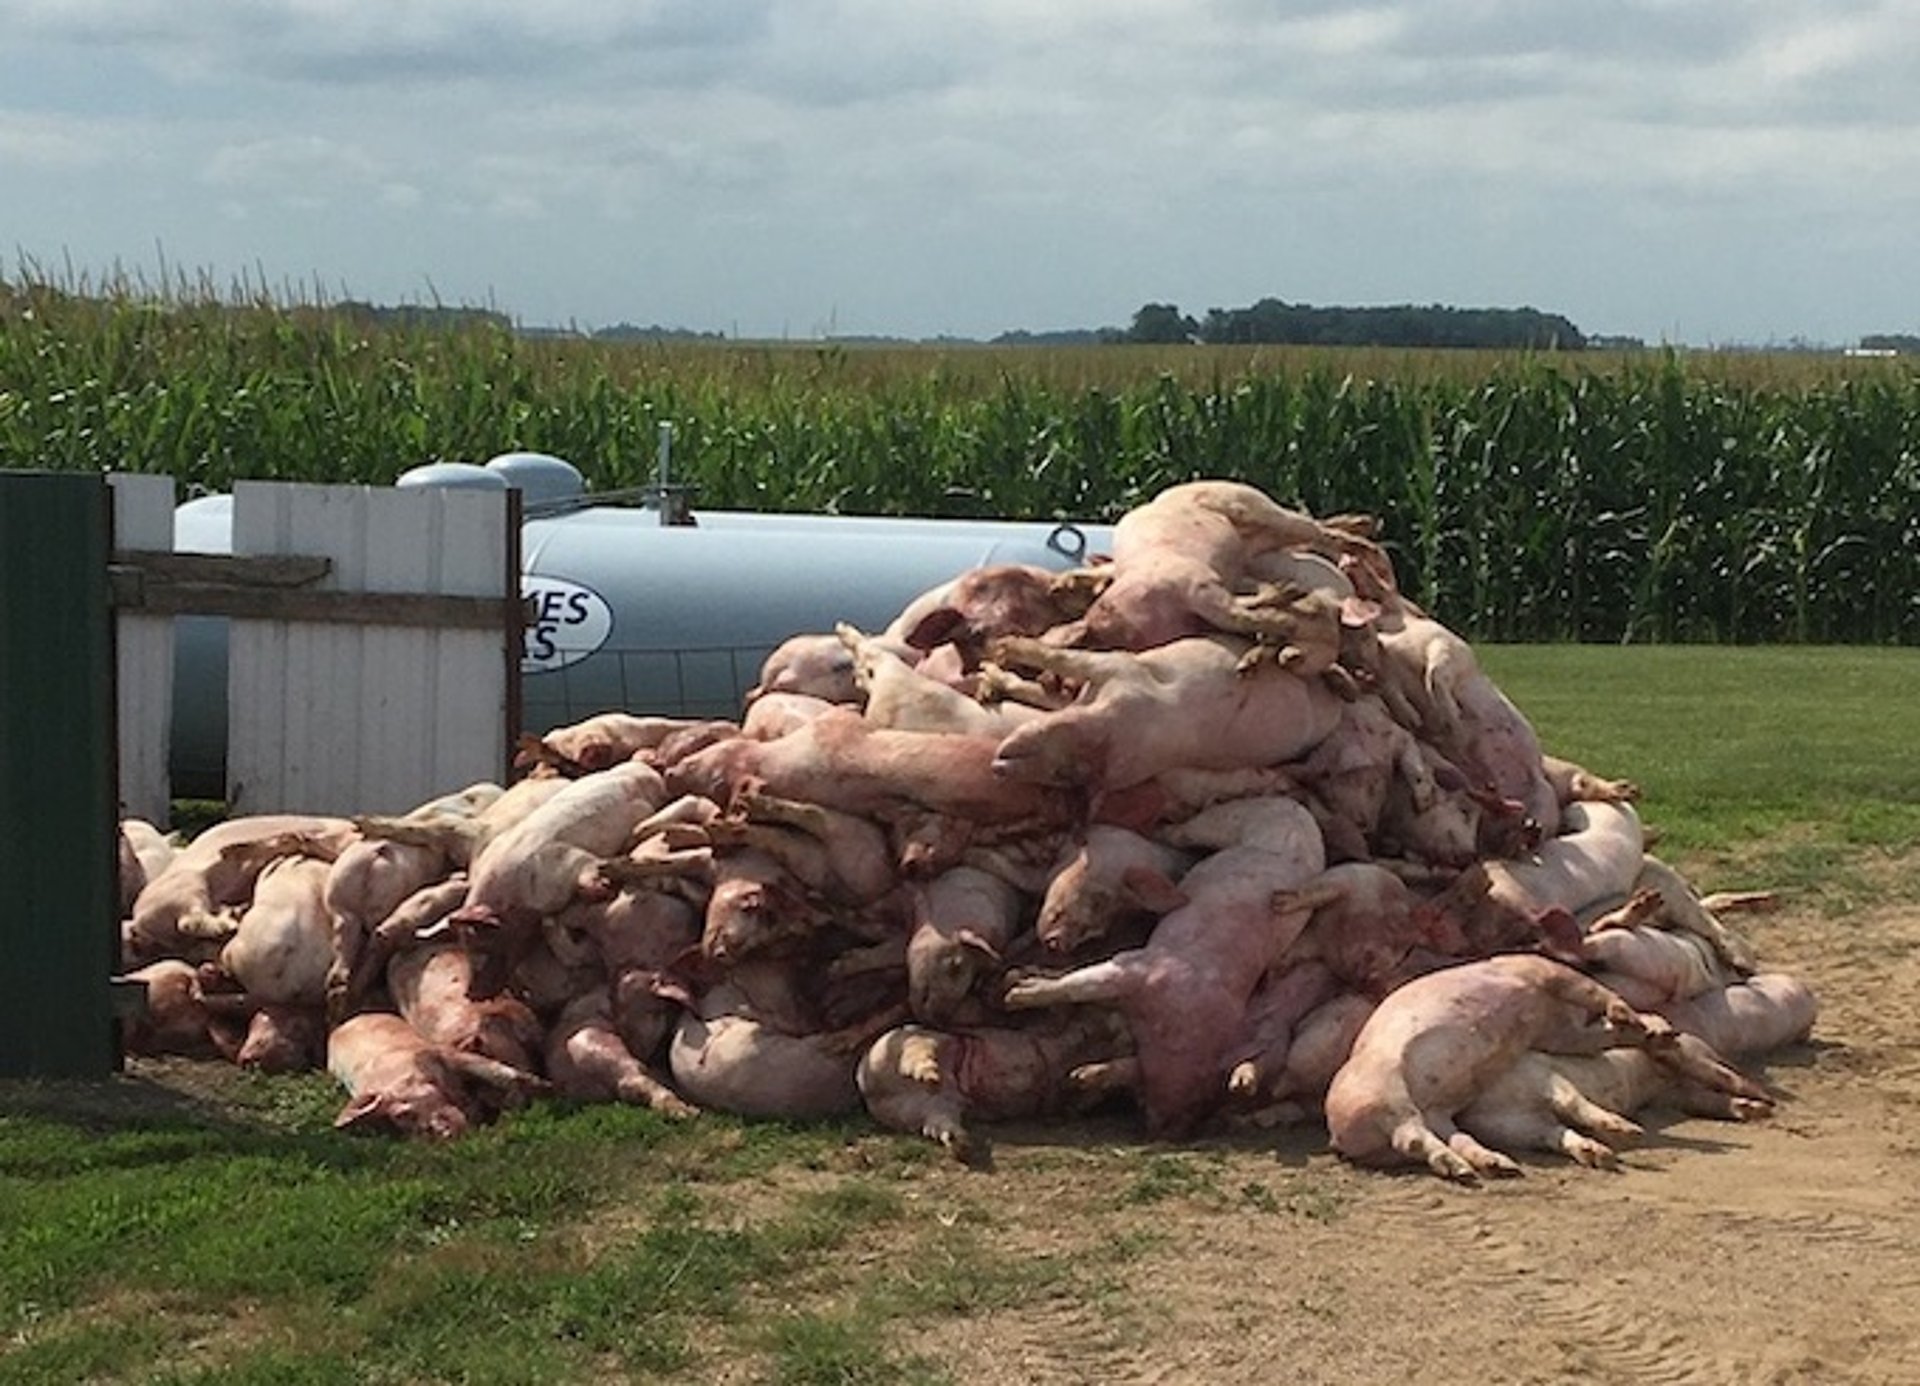 Toxic agent exposure, pigs